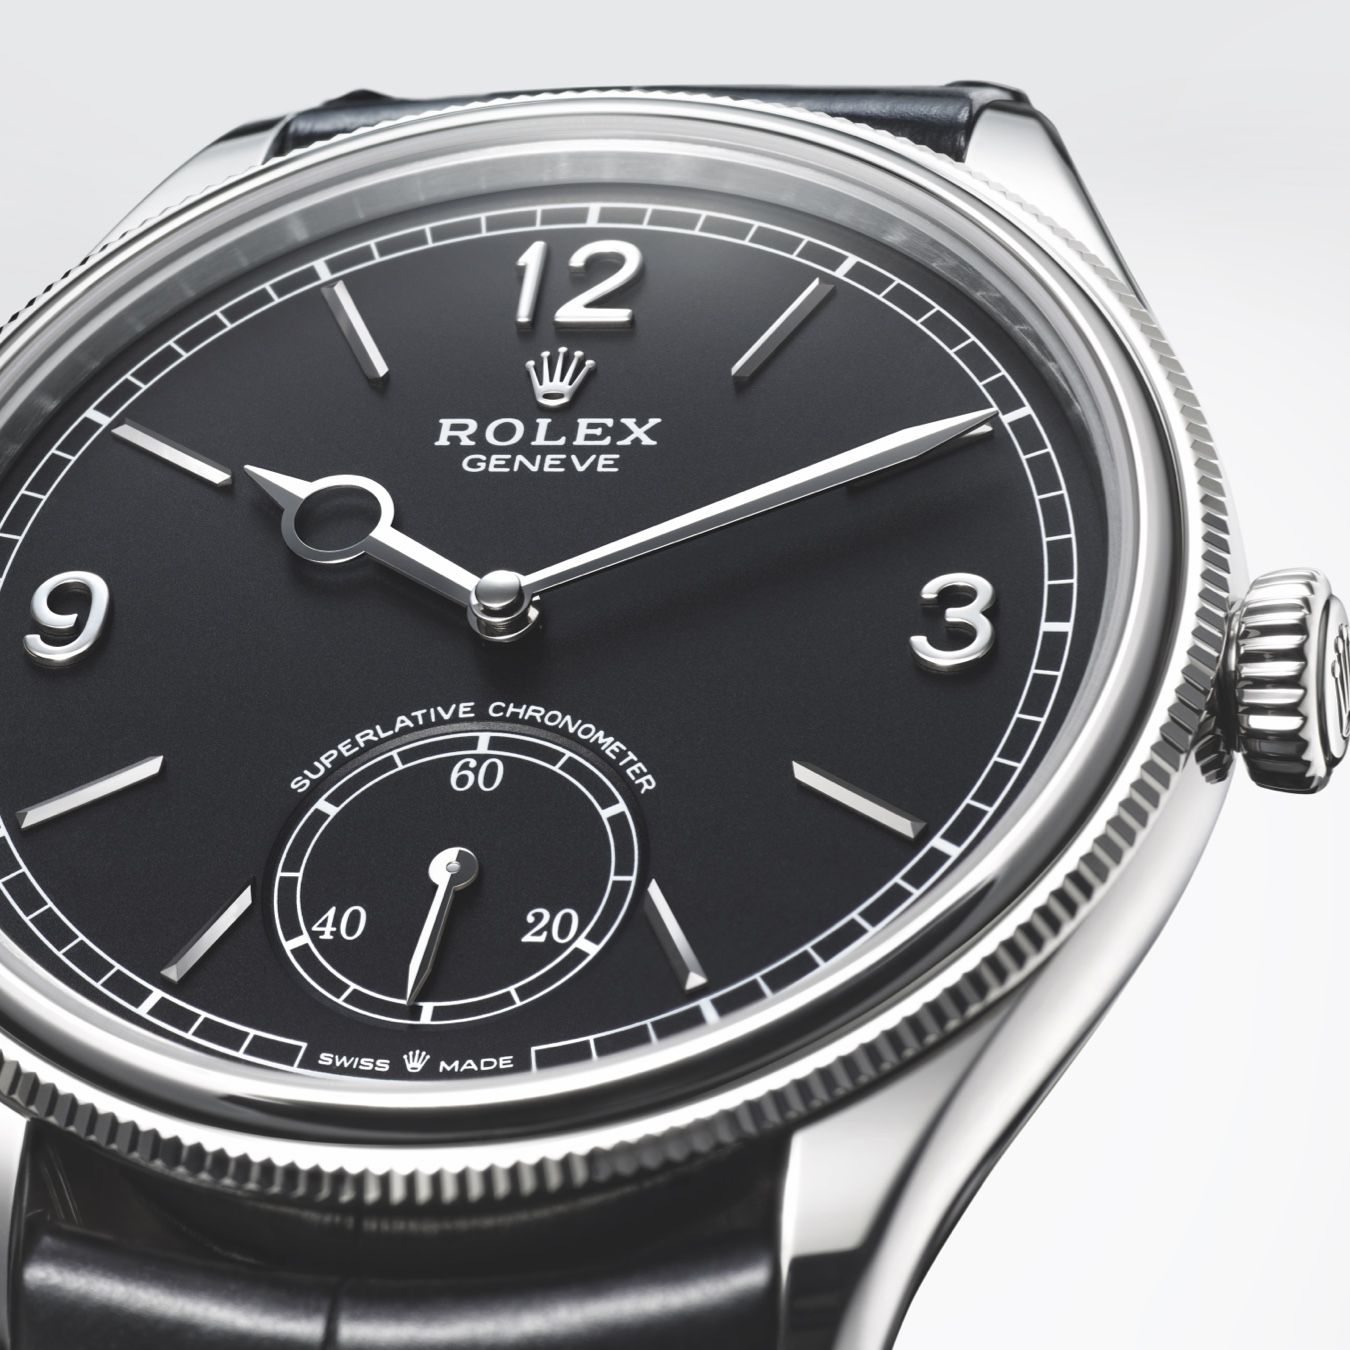 Das Design der Rolex 1908 verbindet Vergangenheit mit Gegenwart